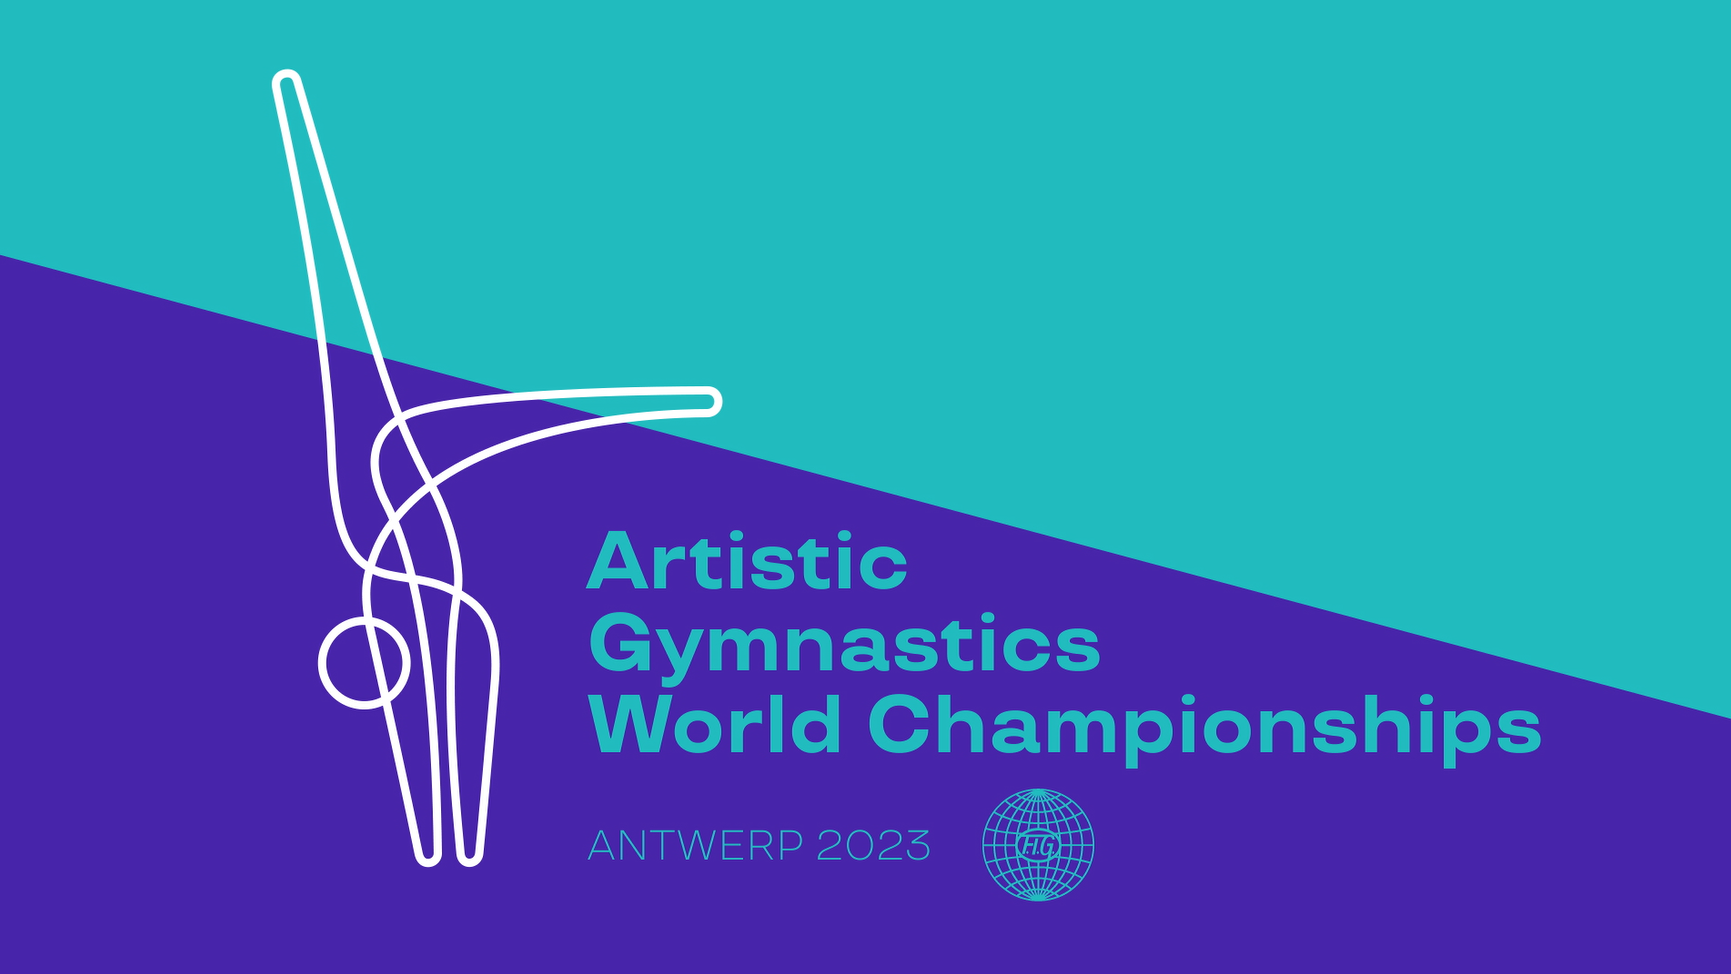 Campeonato do Mundo de Ginástica Artística 2023 - Desporto - RTP